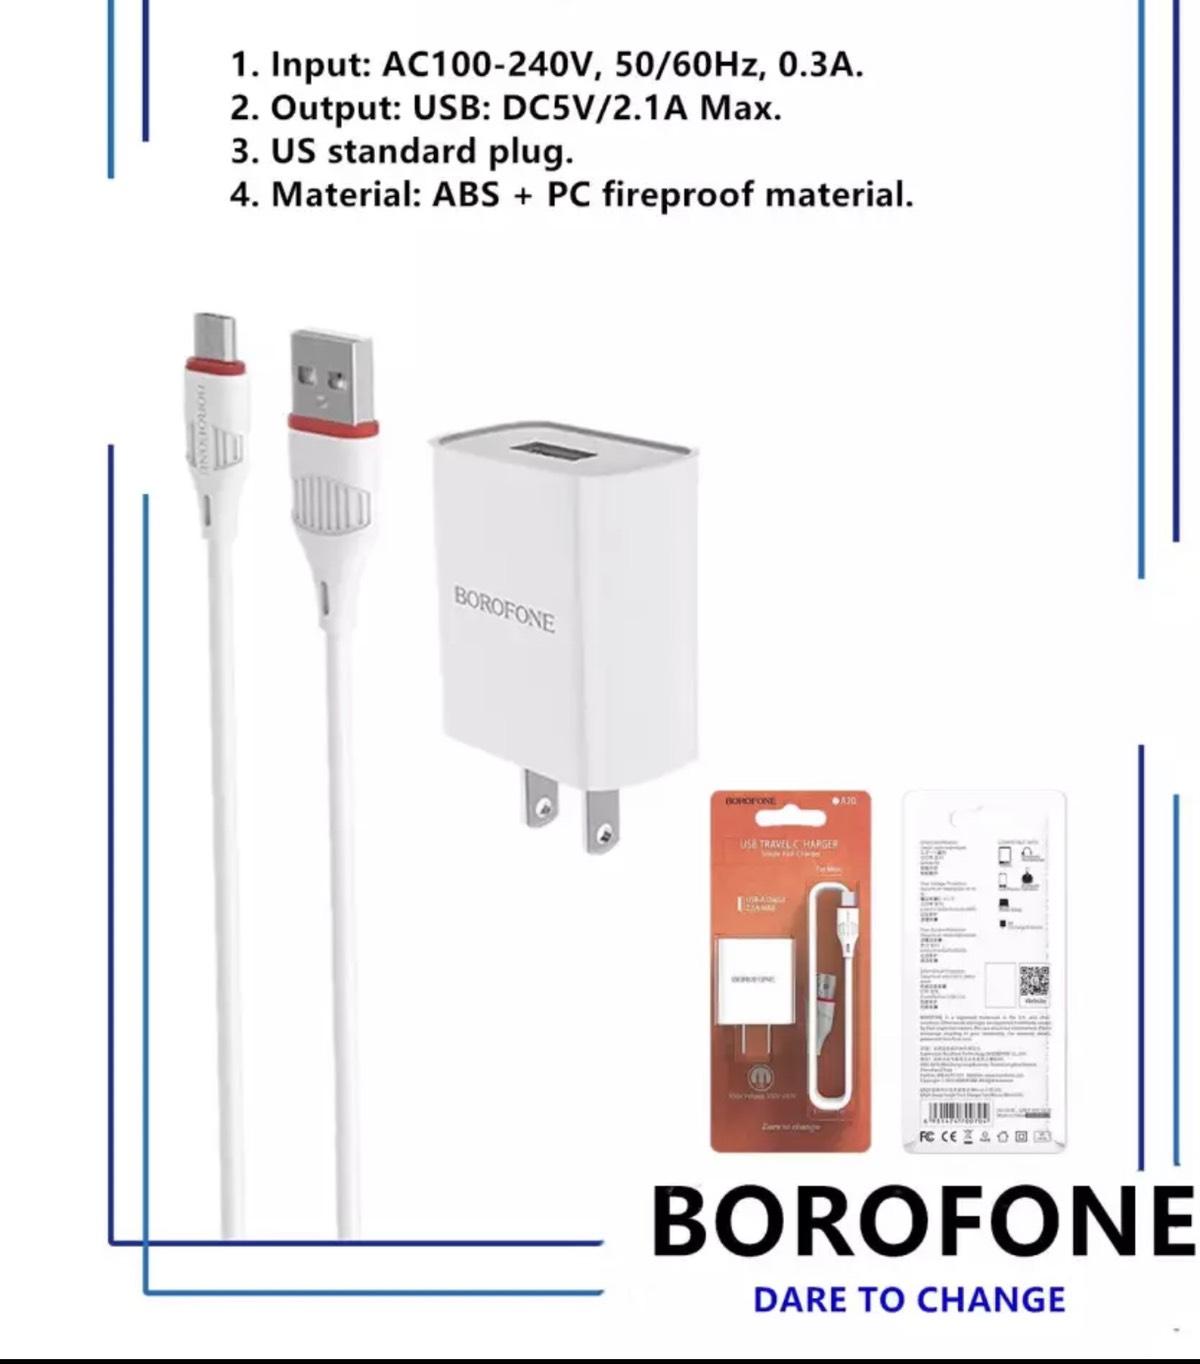 BOROFONE BA20 ชาร์ป, ผนังชาร์จพร้อมพอร์ต USB เดียว, US plug, สายเคเบิล Micro-USB หรือ USB-C, กระแสไฟออก 2.1A